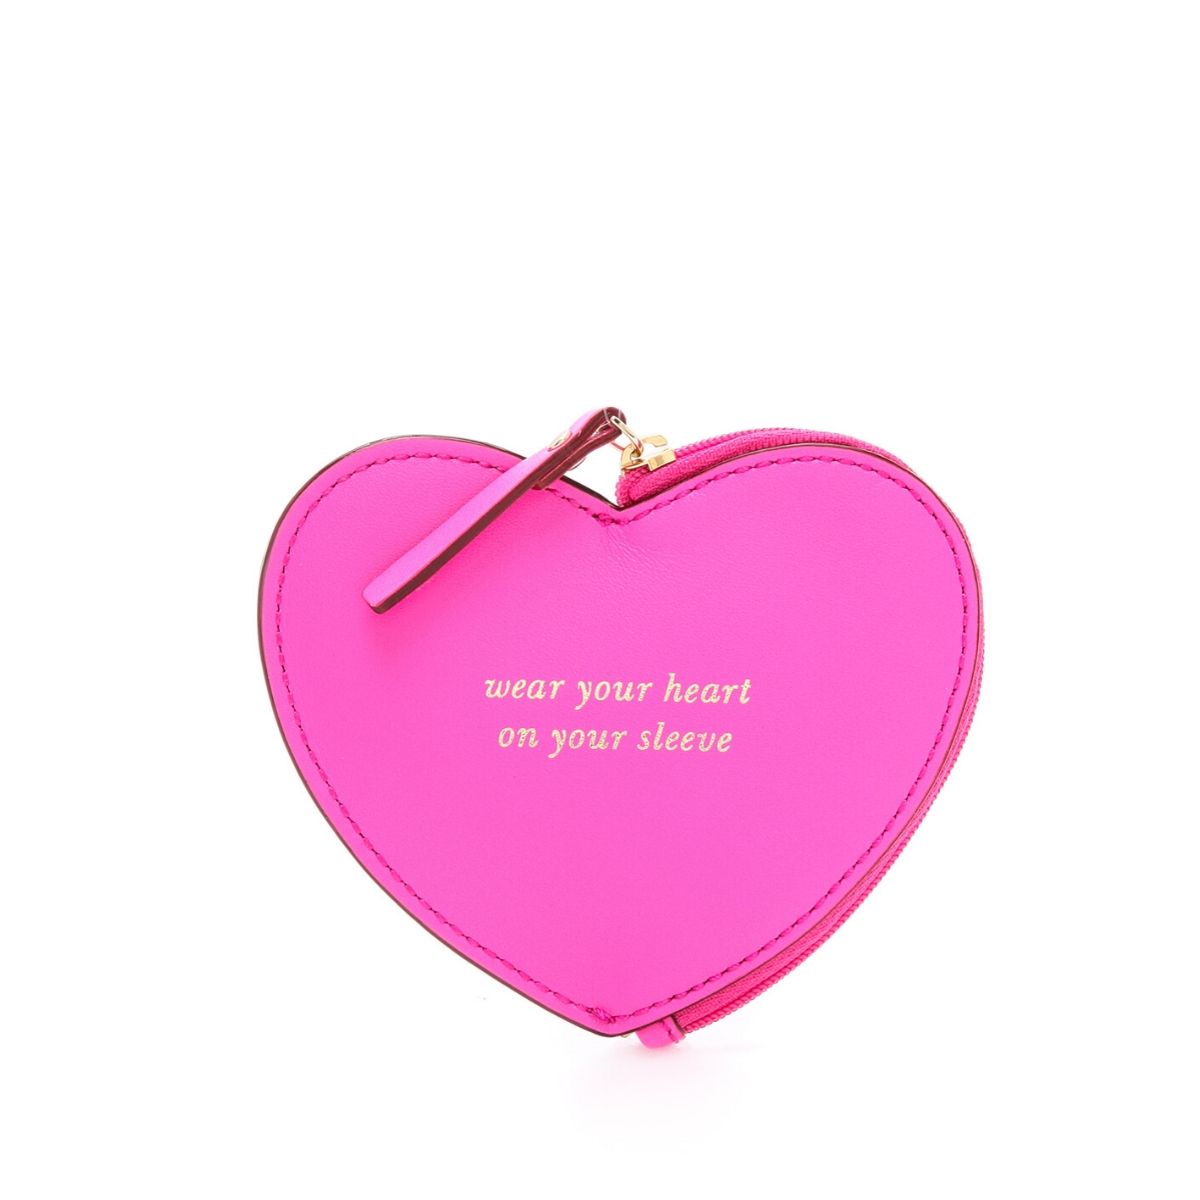 Jules Kae Heart Coin Purse Pink heart-shaped coin - Depop